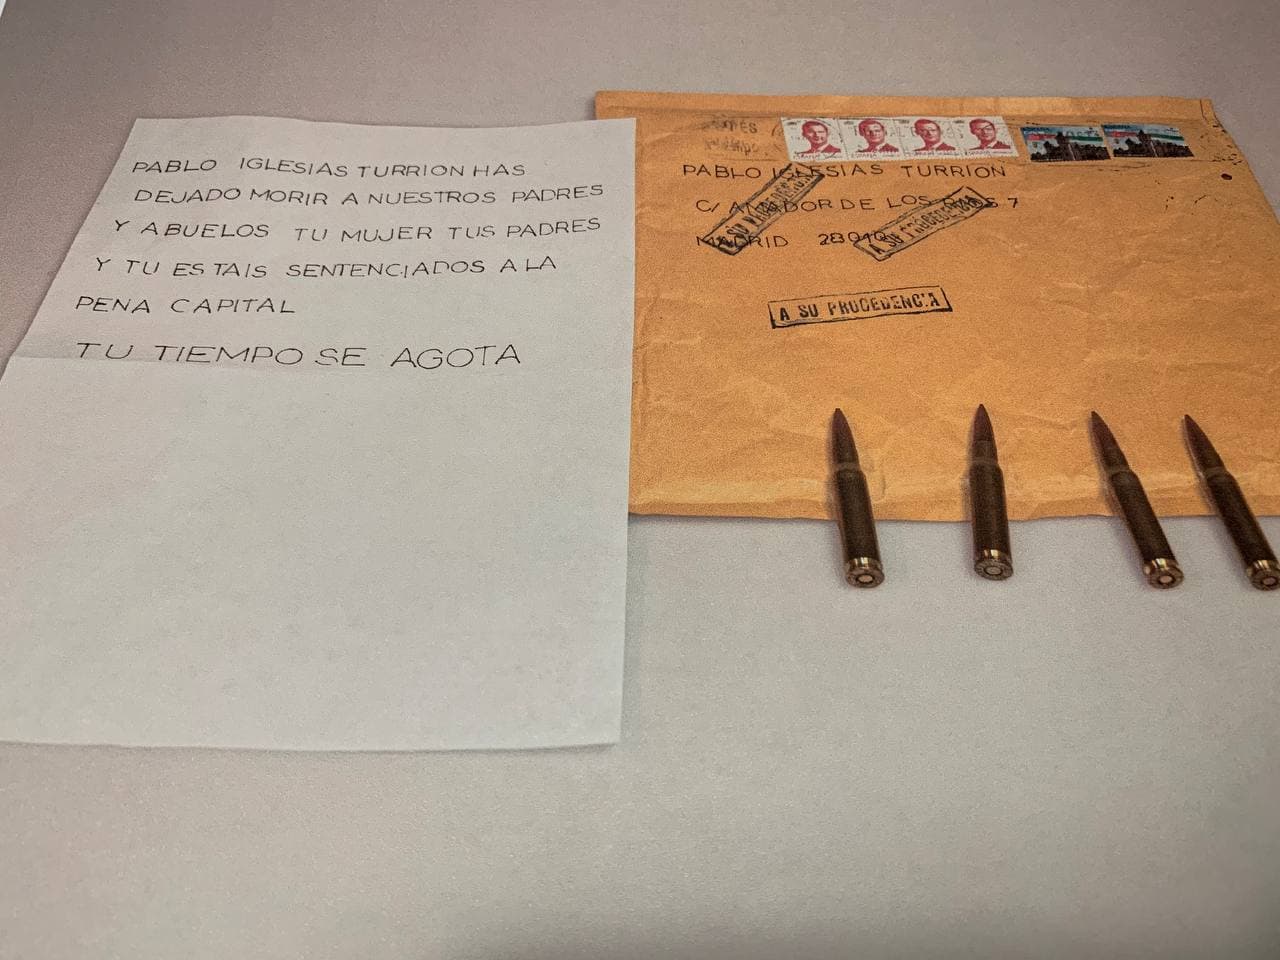 La amenaza recibida por Pablo Iglesias con balas y una carta. TWITTER